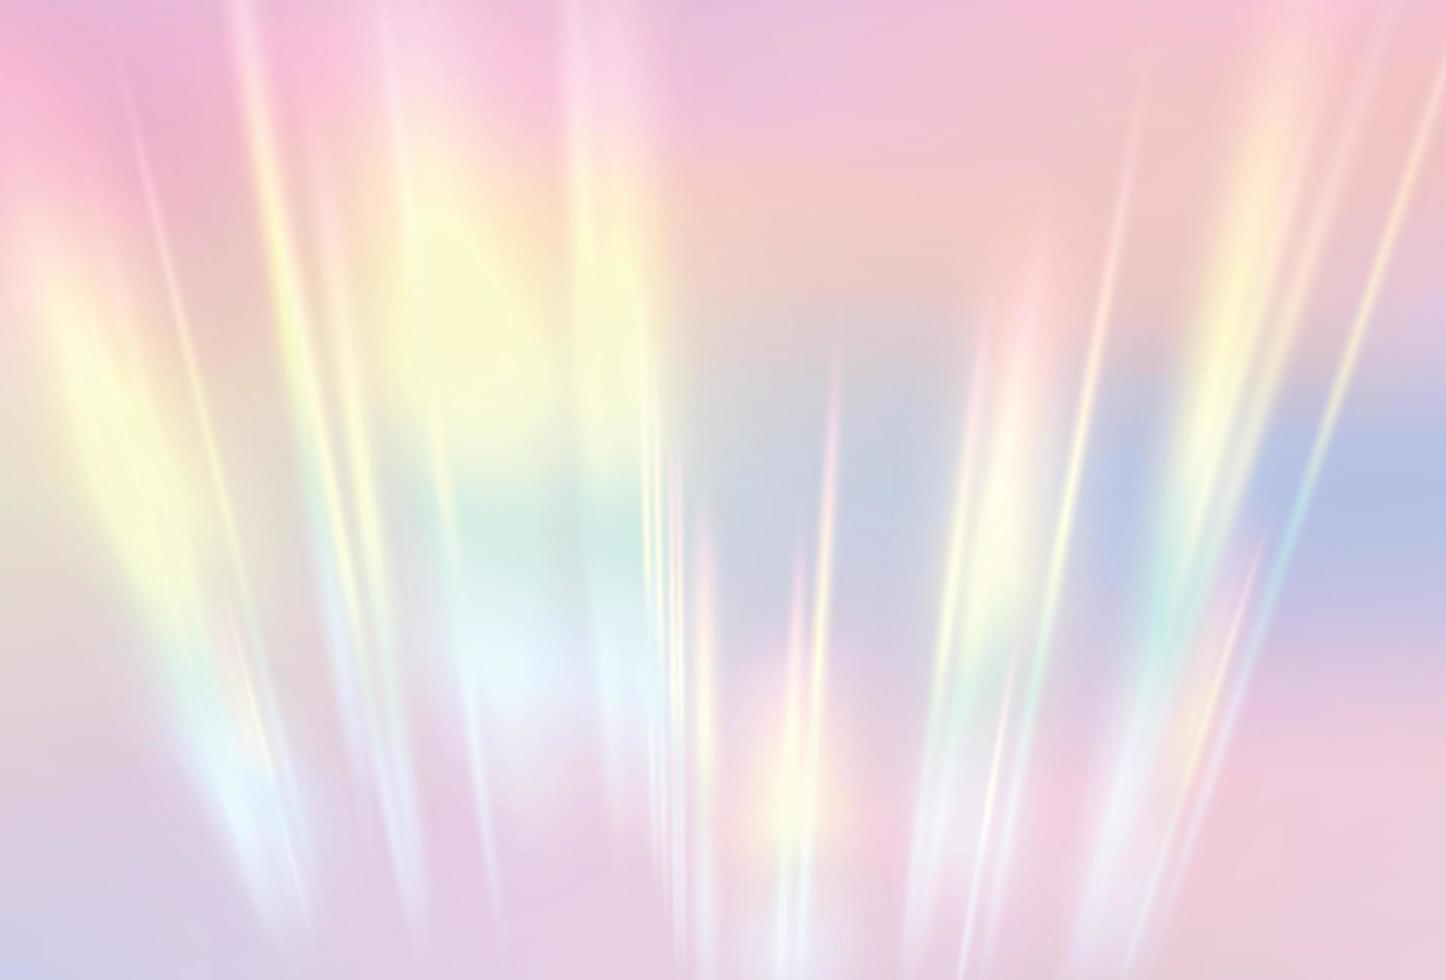 effet réaliste de lentille de prisme arc-en-ciel. illustration vectorielle de texture de réfraction de la lumière vecteur